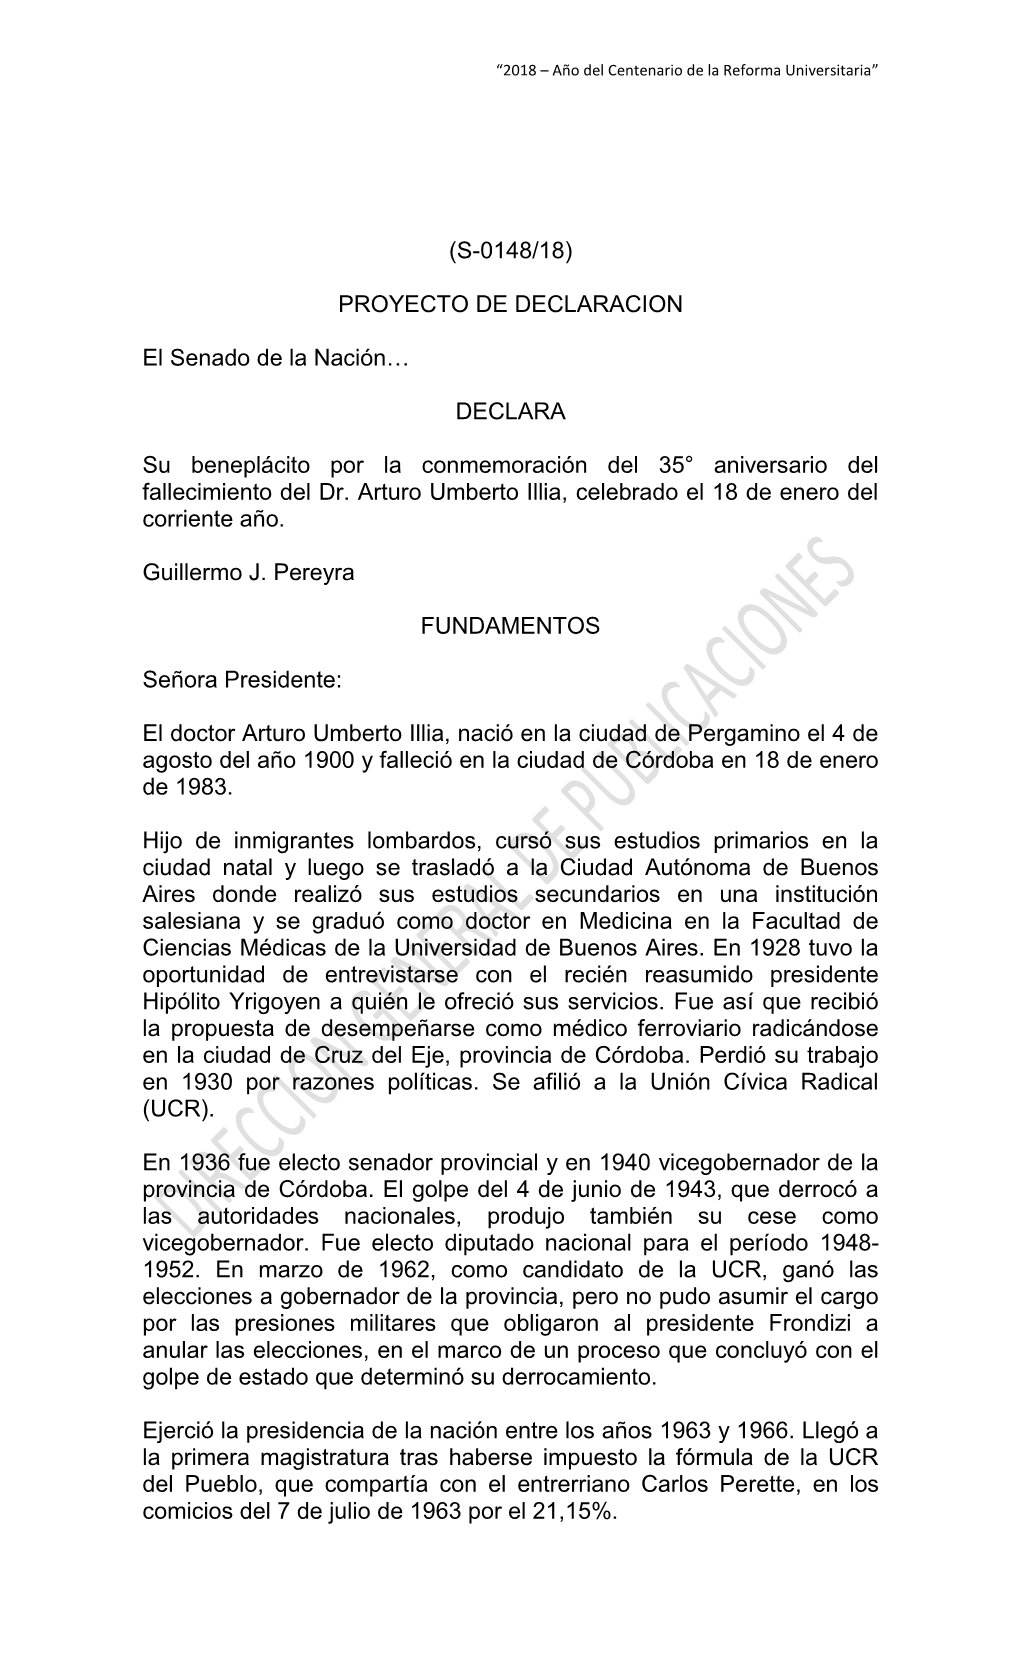 (S-0148/18) PROYECTO DE DECLARACION El Senado De La Nación… DECLARA Su Beneplácito Por La Conmemoración Del 35° Aniversari